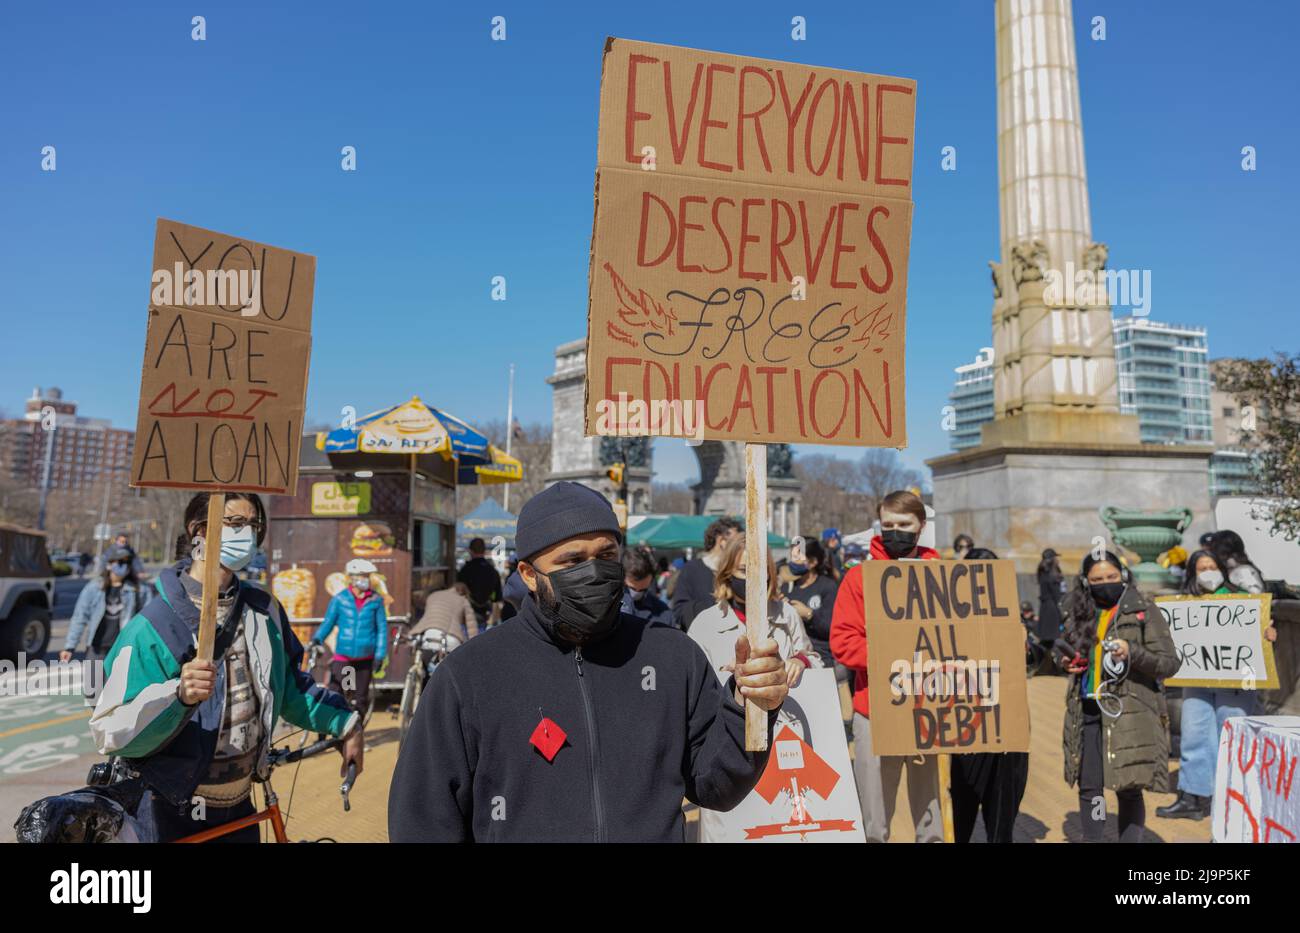 BROOKLYN, N.Y. – 3 aprile 2021: I manifestanti protestano nei pressi del Grand Army Plaza durante un raduno per cancellare i debiti di prestito degli studenti. Foto Stock